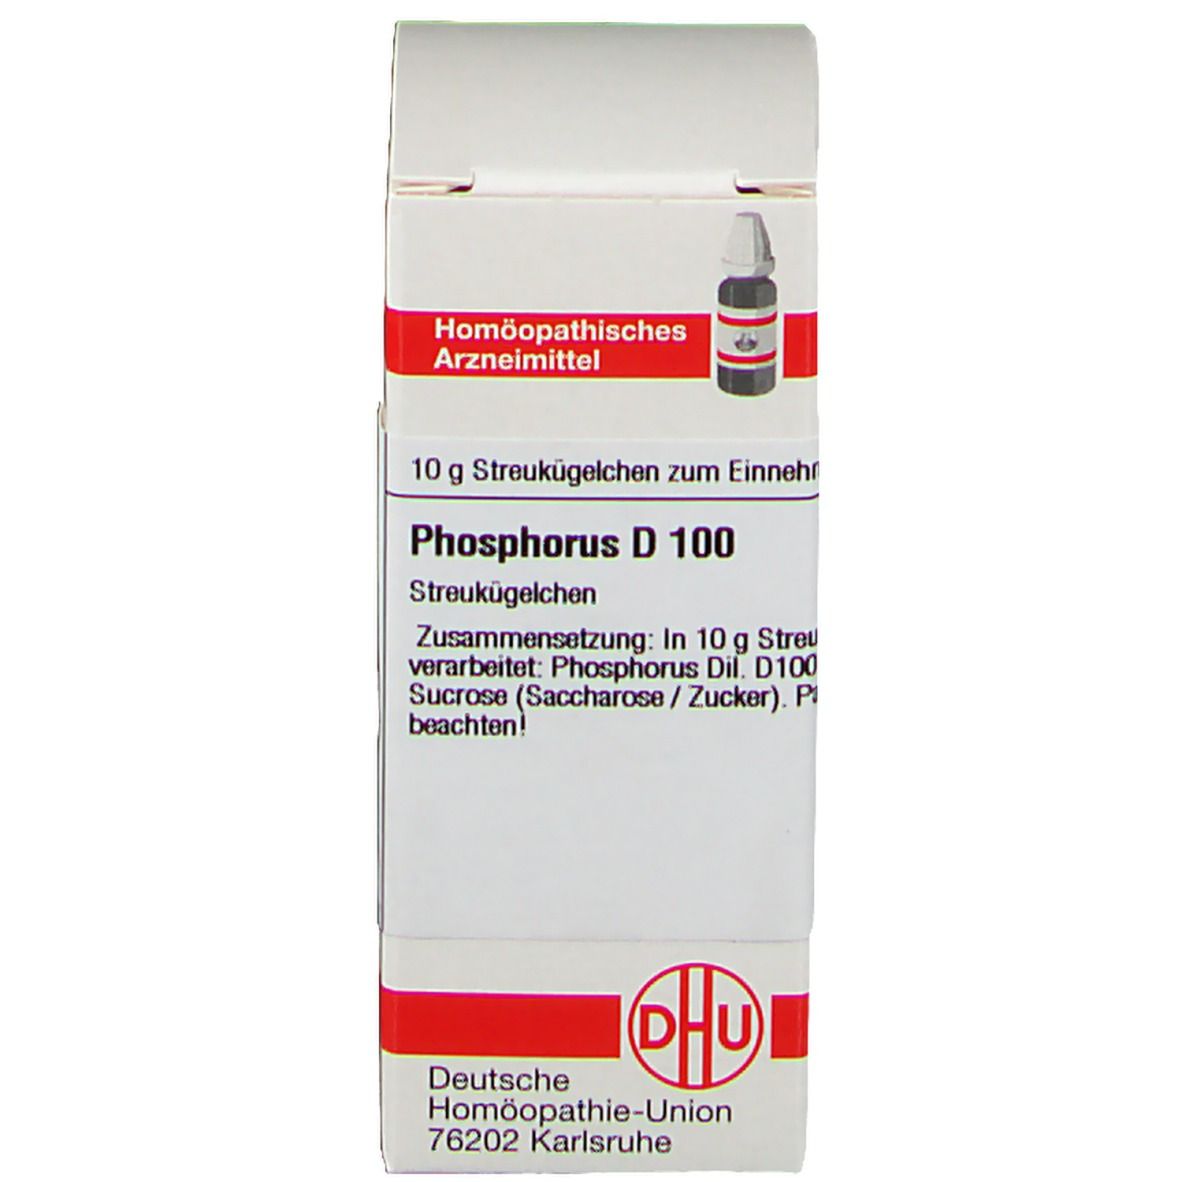 DHU Phosphorus D100